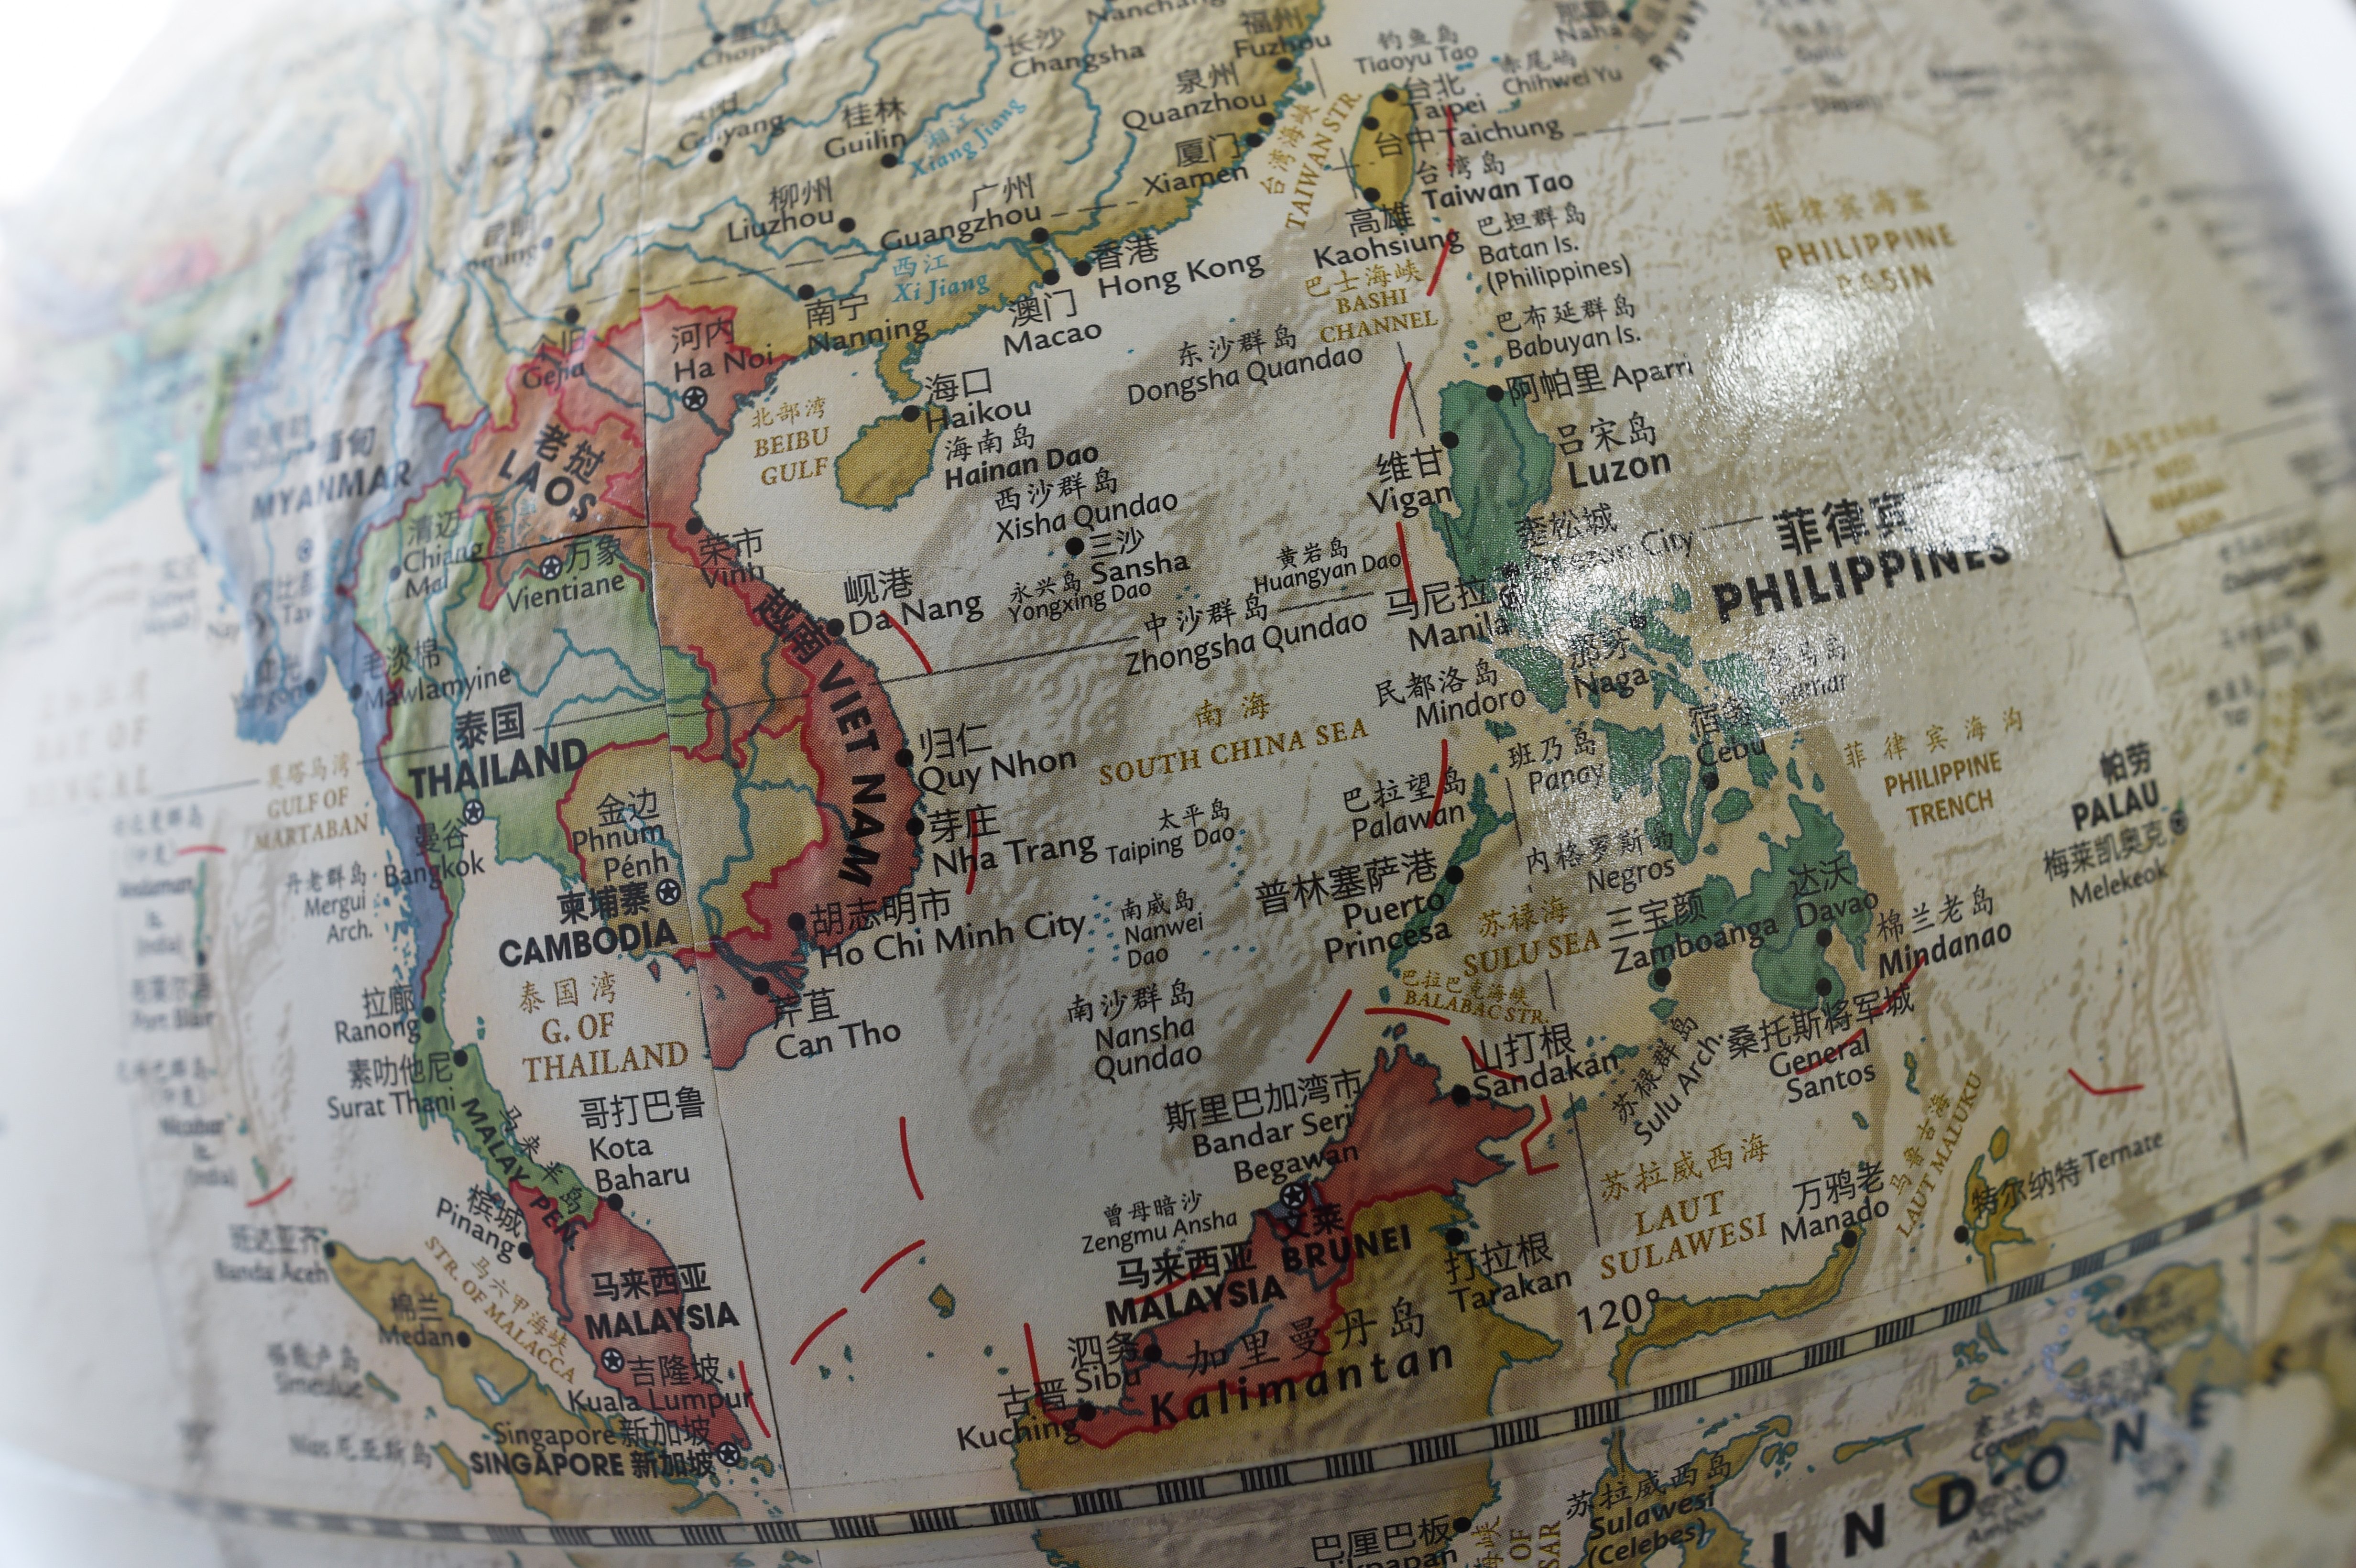 Un globe terrestre chinois fait apparaître la mer de Chine méridionale où les îles Spratleys sont indiquées en tant que "Nansha Qundao".